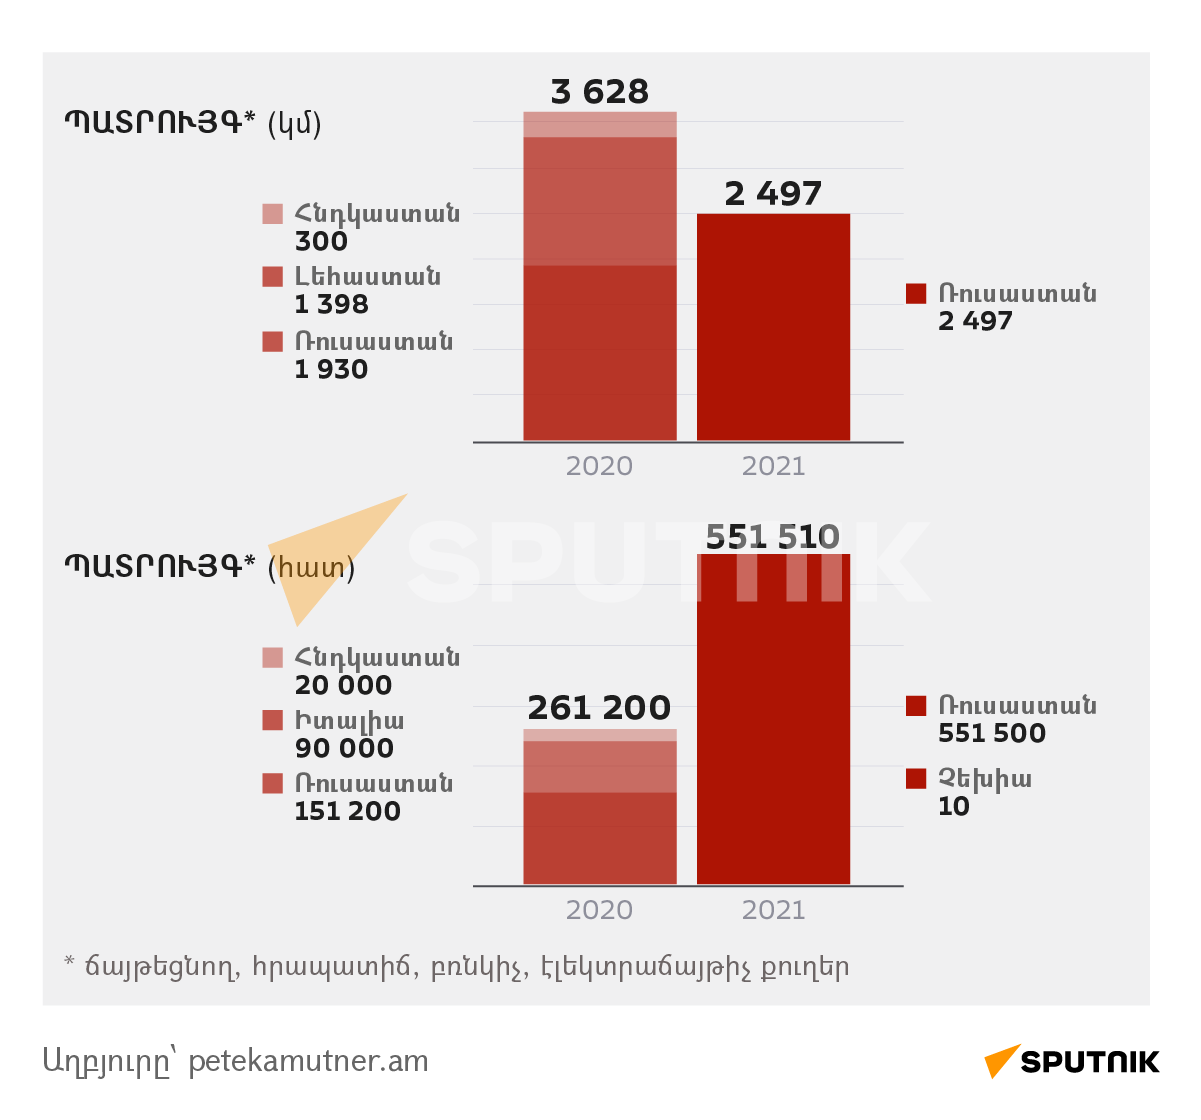 Ինչ ծավալի ու ինչ տեսակի պայթուցիկ նյութեր ու հրատեխնիկա է ներկրվել Հայաստան 2020-2021-ին - Sputnik Արմենիա